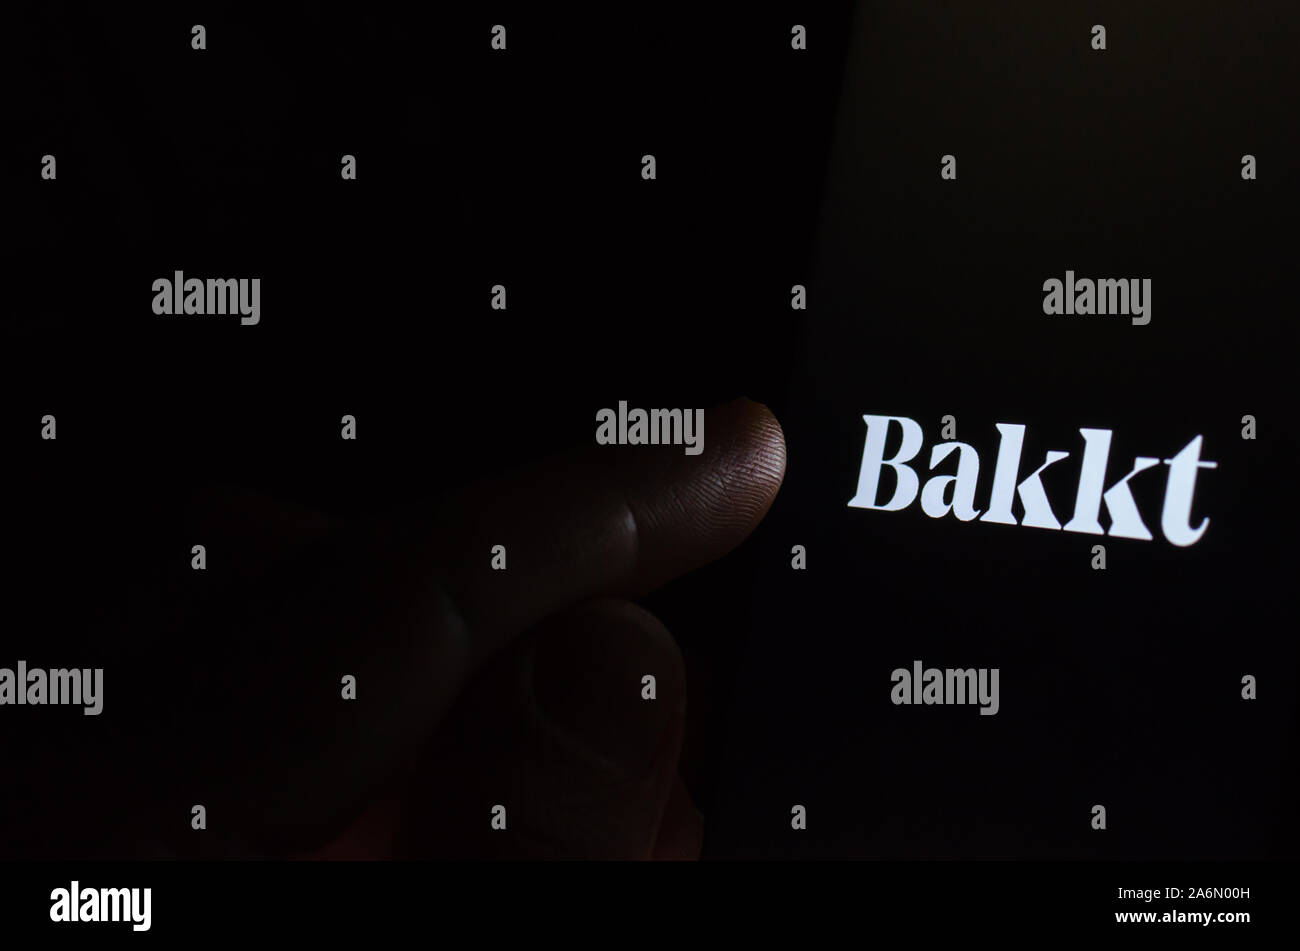 Logo de la société Bakkt sur l'écran du smartphone dans une pièce sombre et un doigt pointant sur elle. Bakkt Bakkt Bitcoin est connu pour des contrats à terme. Banque D'Images